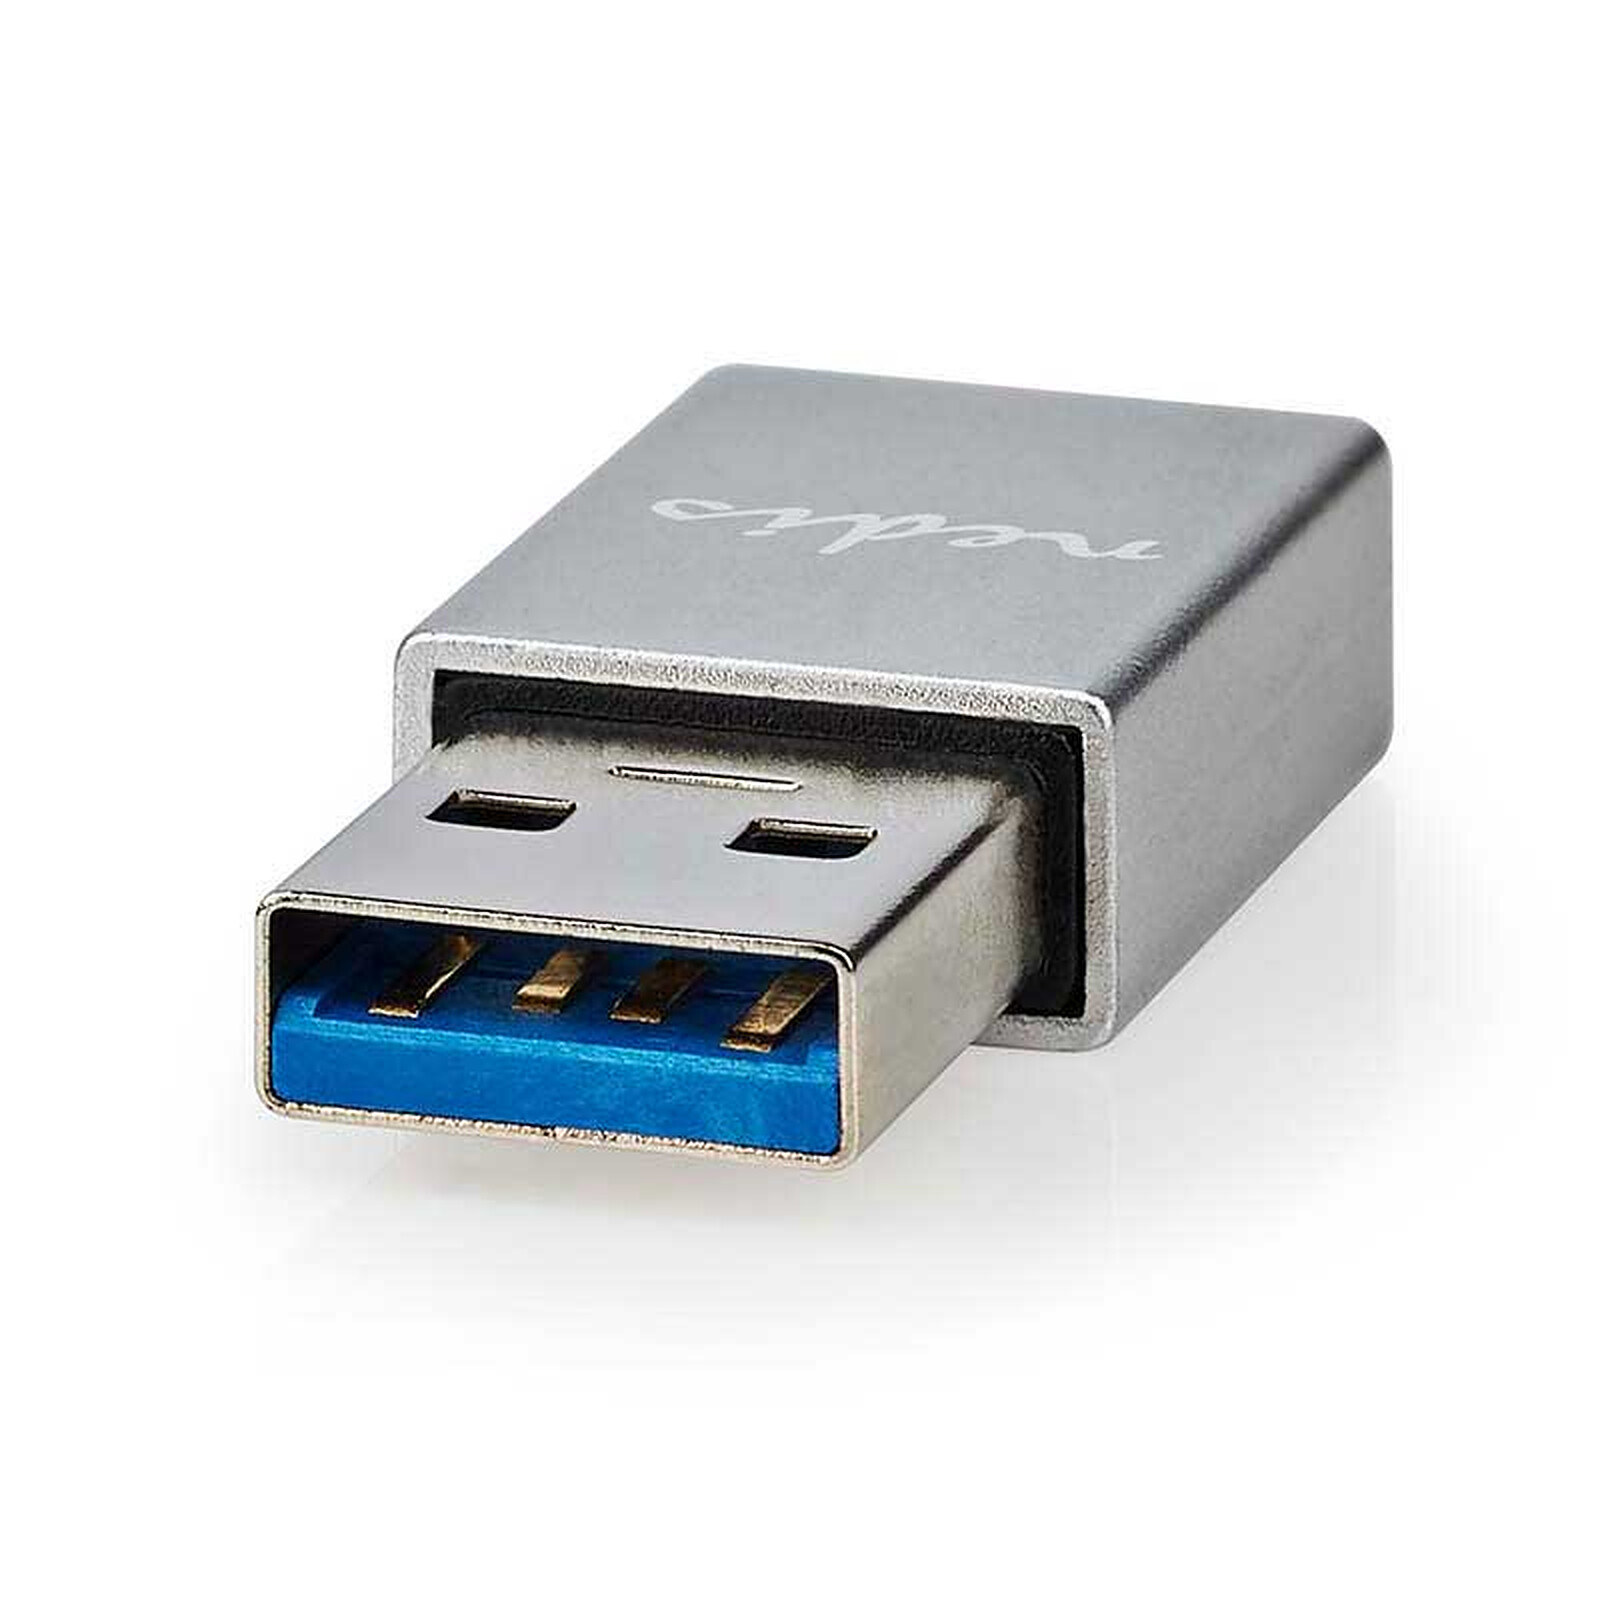 Adaptateur USB Vers Type C OTG, Convertisseur USB USB C Mâle Vers Micro USB  Type C Femelle Pour Macbook Samsung S20, Connecteur USBC OTG Du 0,24 €